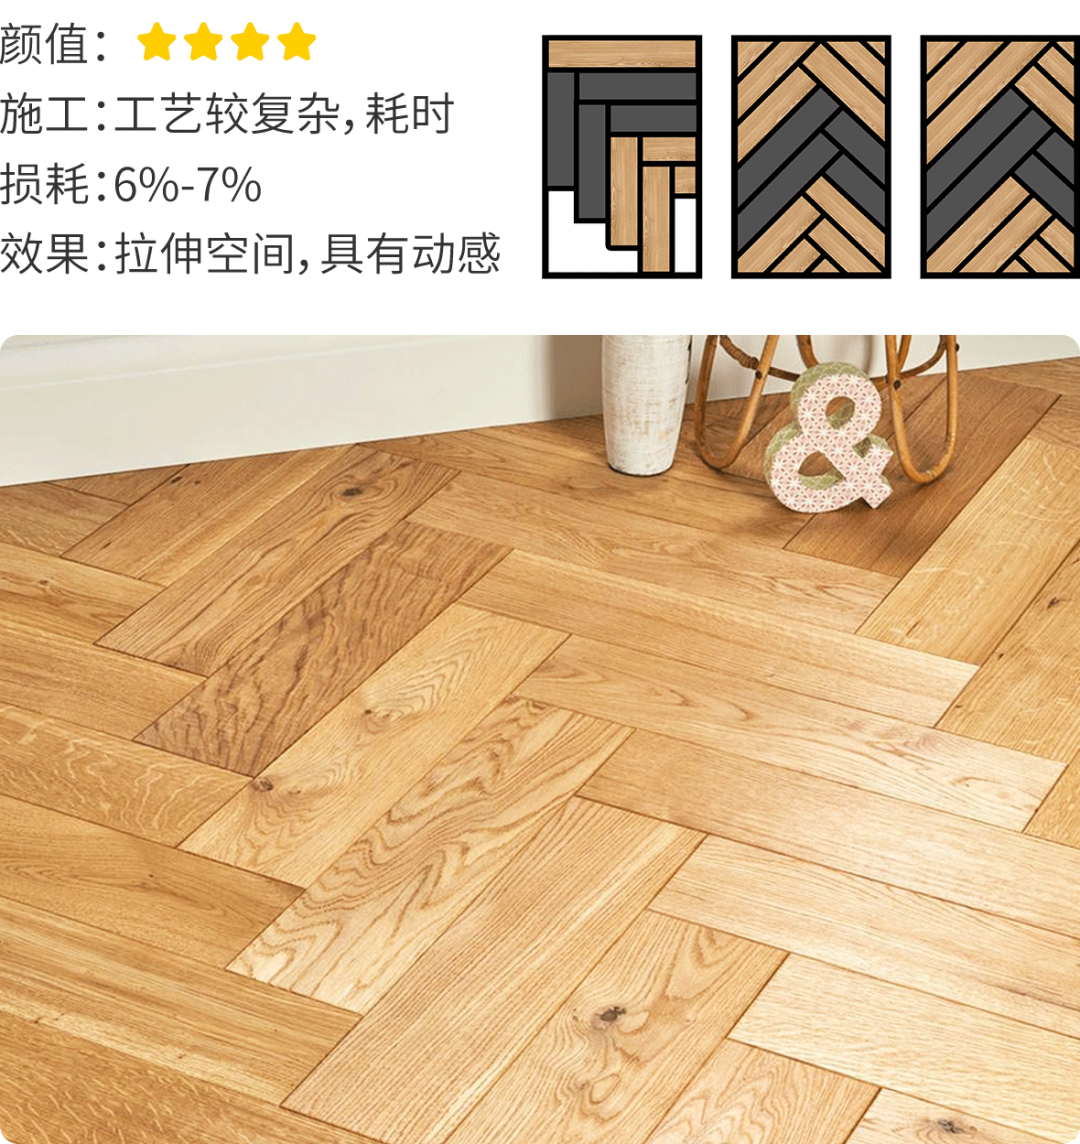 北欧风格木地板装修效果图 客厅木地板图片-地板网